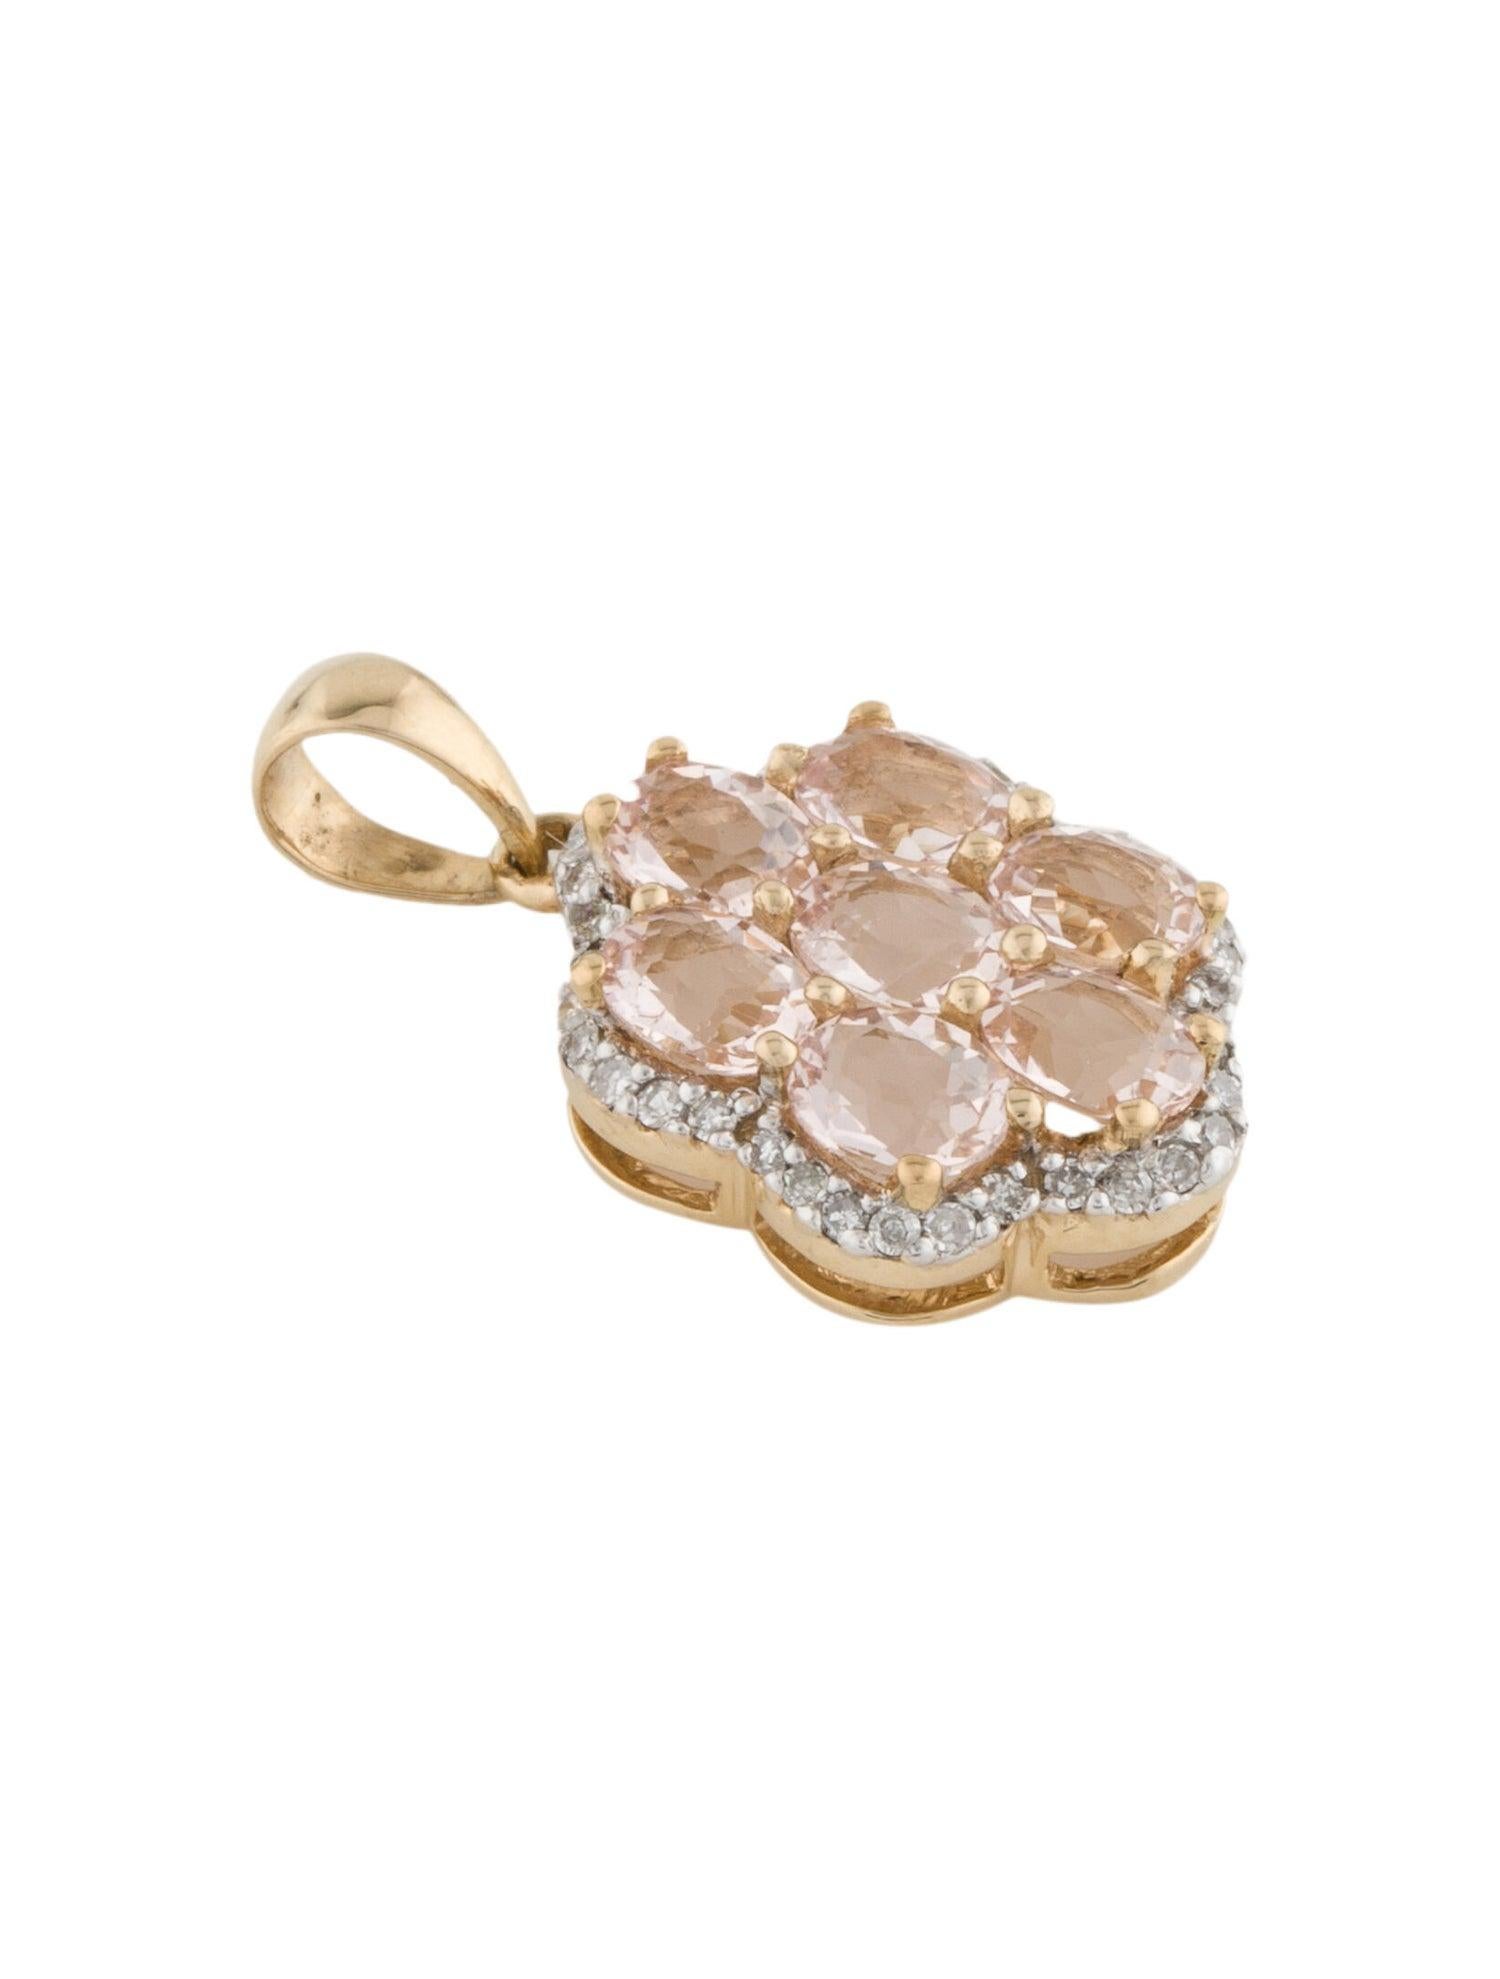 Brilliant Cut Exquisite 14K Diamond & Morganite Pendant - Elegant Gemstone Statement Piece For Sale